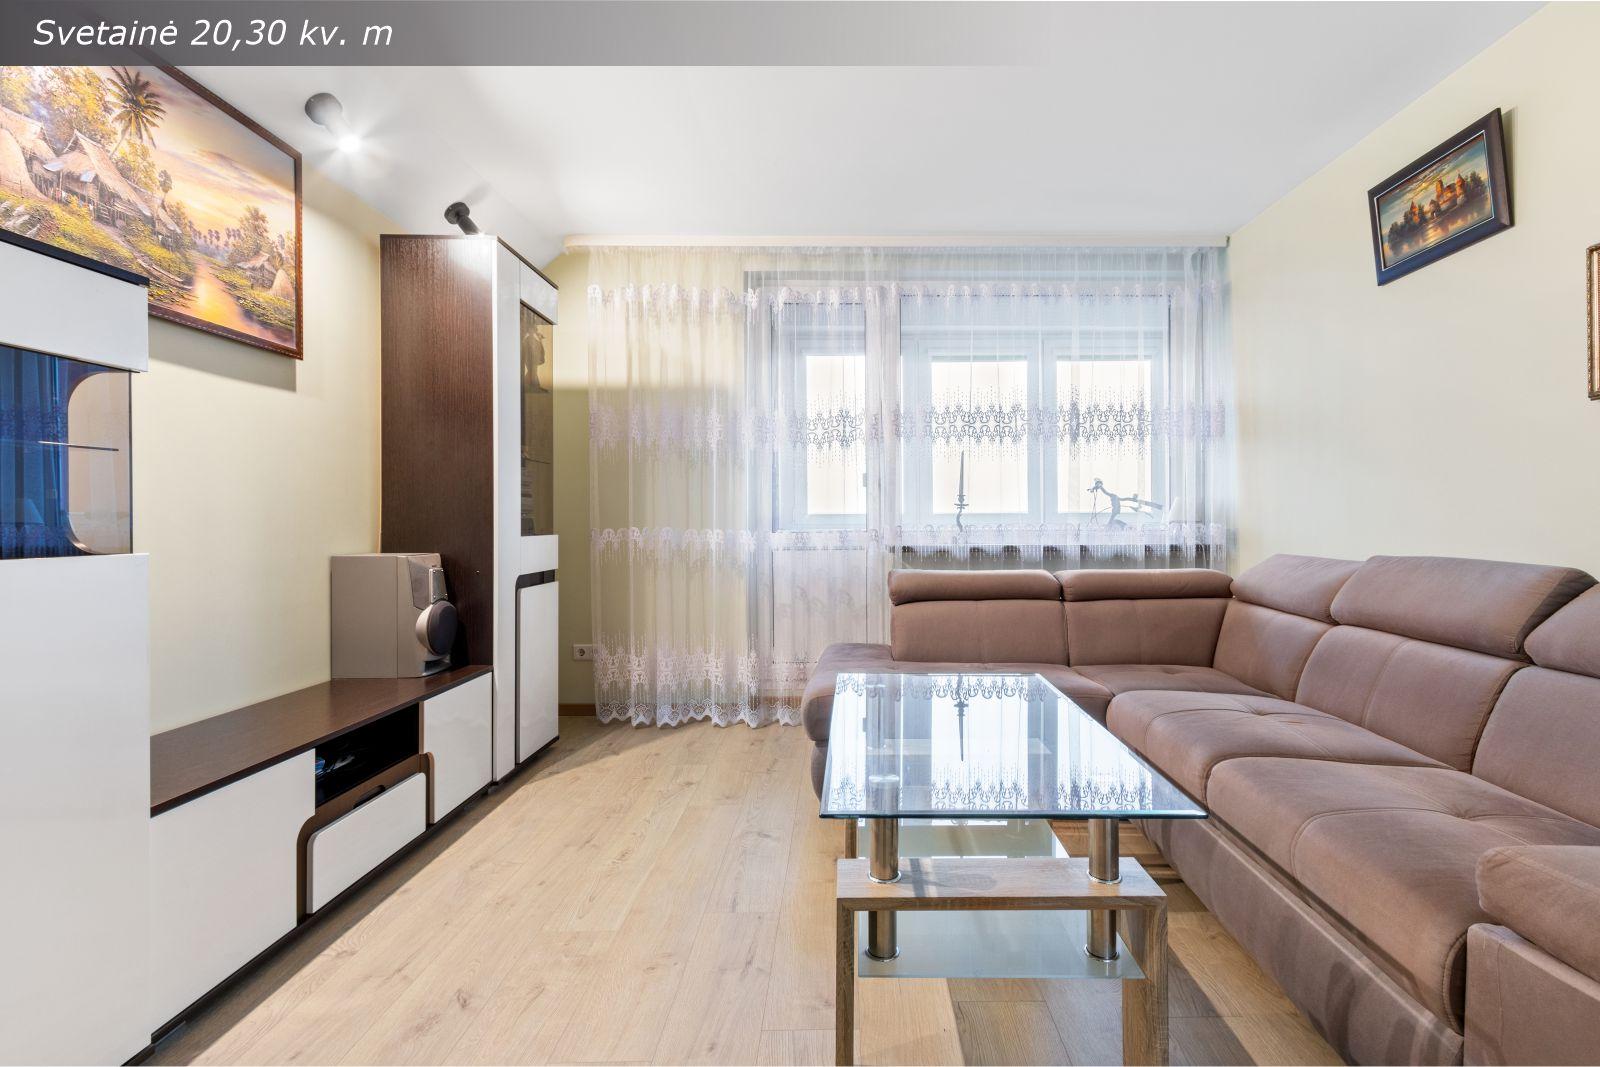 Parduodamas 1 kambario butas 11-ame namo aukšte su erdviu balkonu patogioje Klaipėdos miesto dalyje – Taikos pr.107!